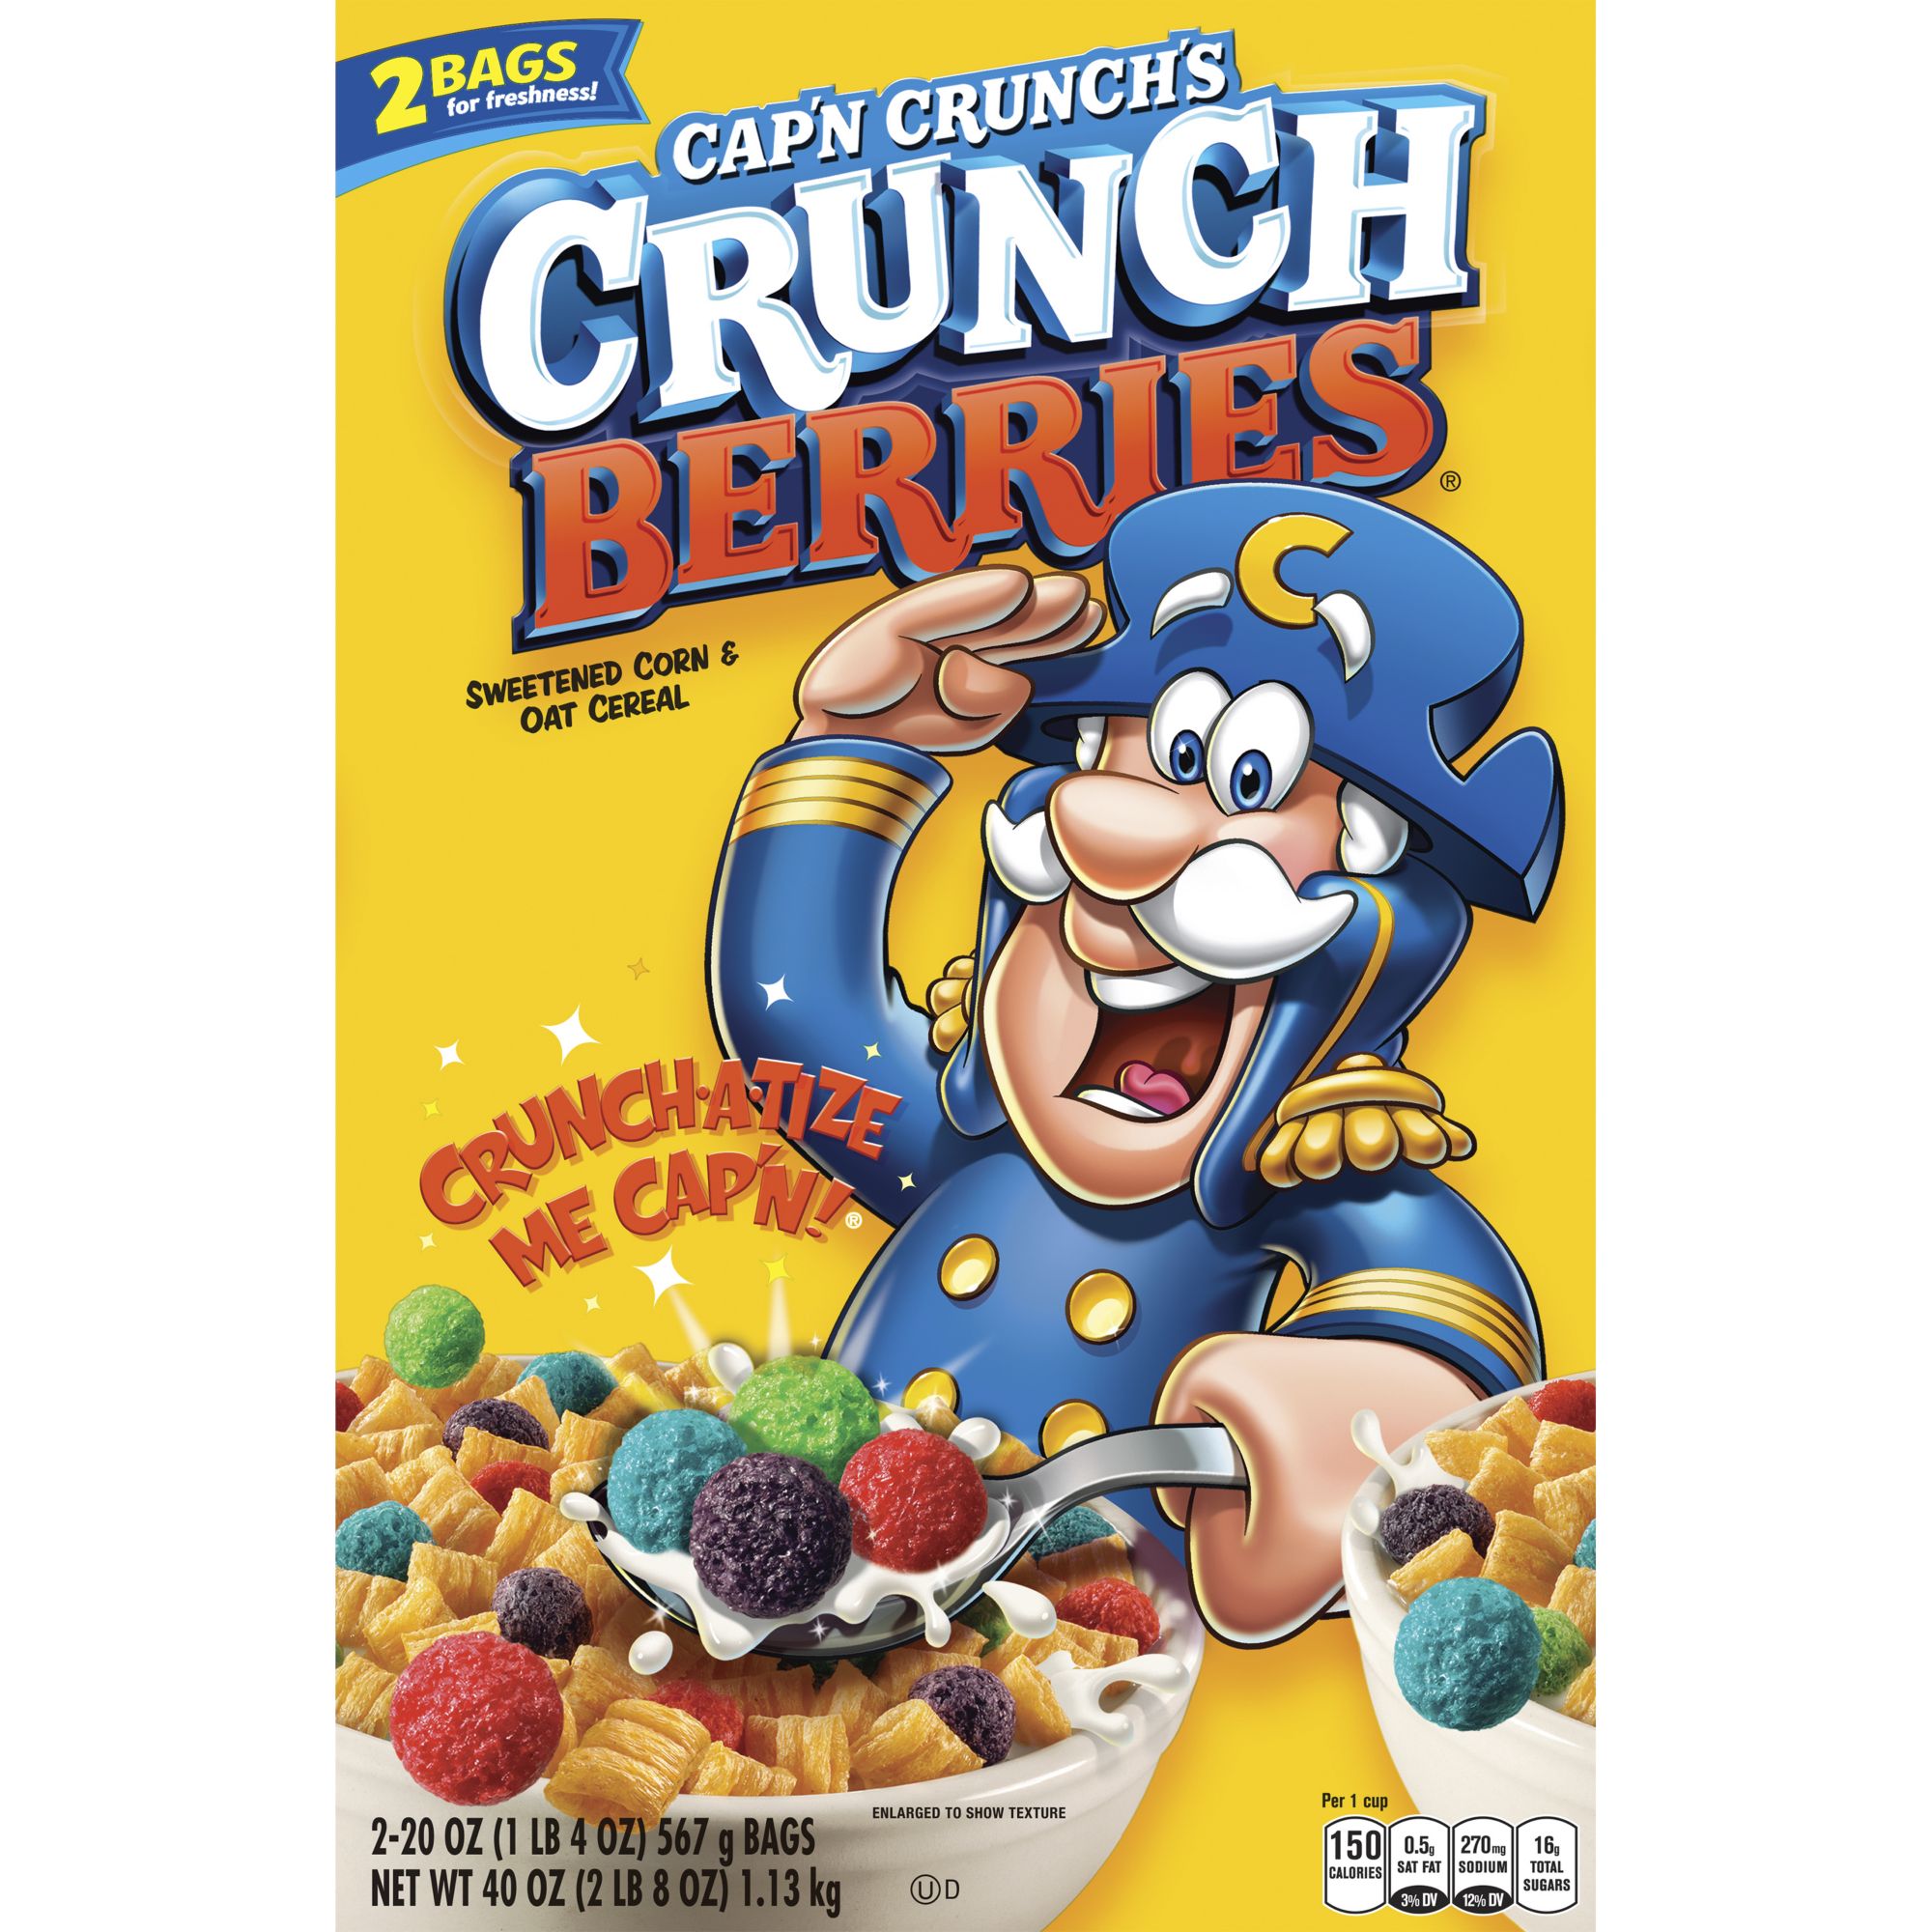 Cap'n Crunch's Crunch Berries Sweetened Corn & Oat Cereal